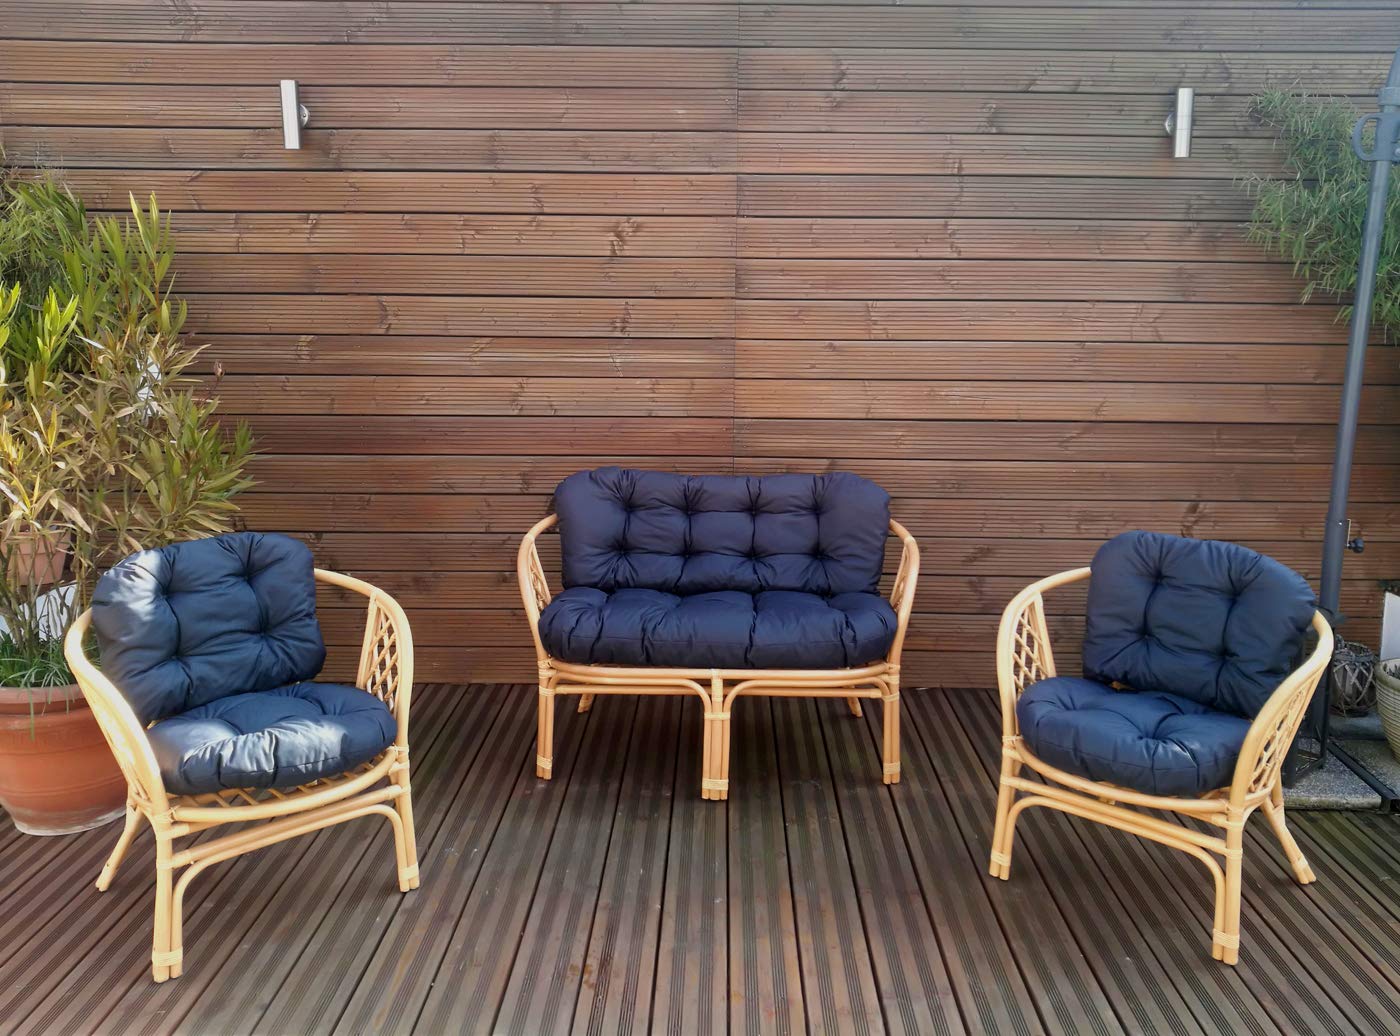 Mayaadi-Home Gartenbankauflagen 6 teiliges Sitzkissen-Set Sitzpolster für Gartengarnitur Set Steve JCG1 (Dunkelblau, Polyester)